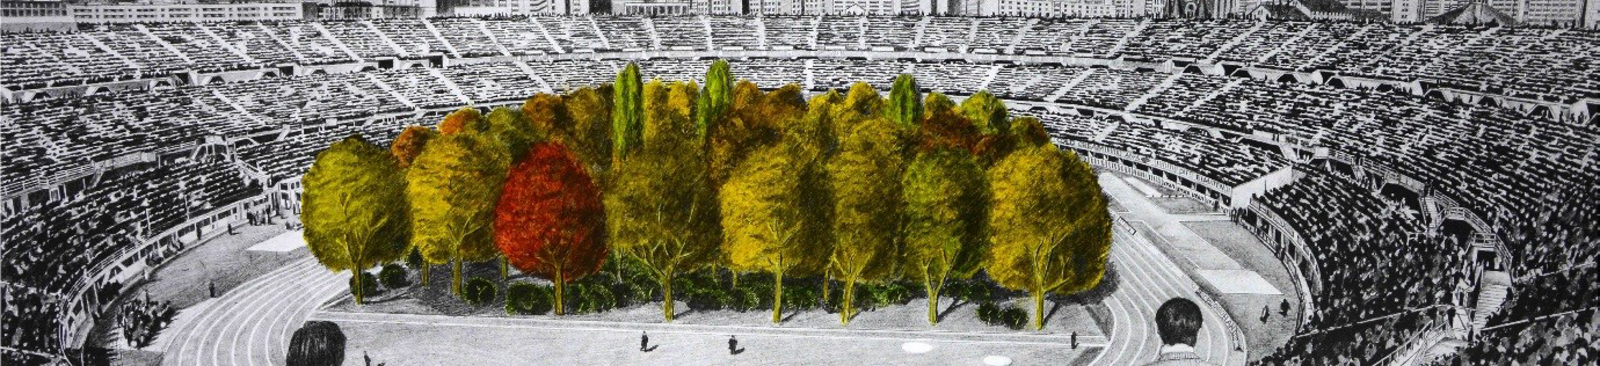 Max Peintner, The Unending Attraction of Nature, rysunek ołówkiem, 1970/71, ręcznie pokolorowany przez Klausa Littmanna w 2018 r., niepowtarzalny wydruk z serii